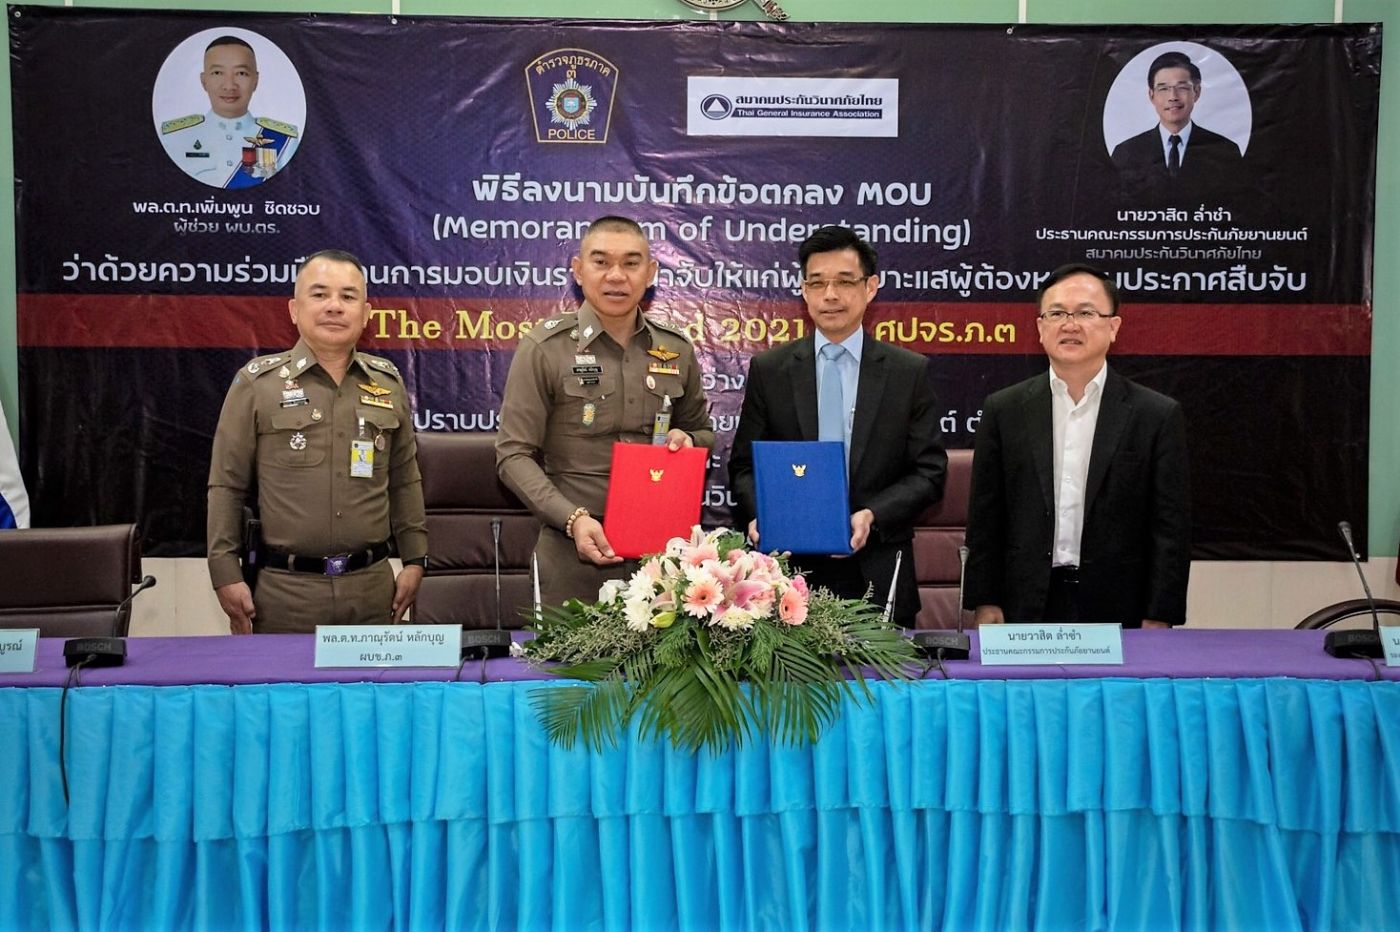 สมาคมประกันวินาศภัยไทย ลงนามบันทึกข้อตกลง “ว่าด้วยความร่วมมือด้านการมอบเงินรางวัลนำจับให้แก่ผู้แจ้งเบาะแสผู้ต้องหาตามประกาศสืบจับ” ร่วมกับ ตำรวจภูธรภาค 3